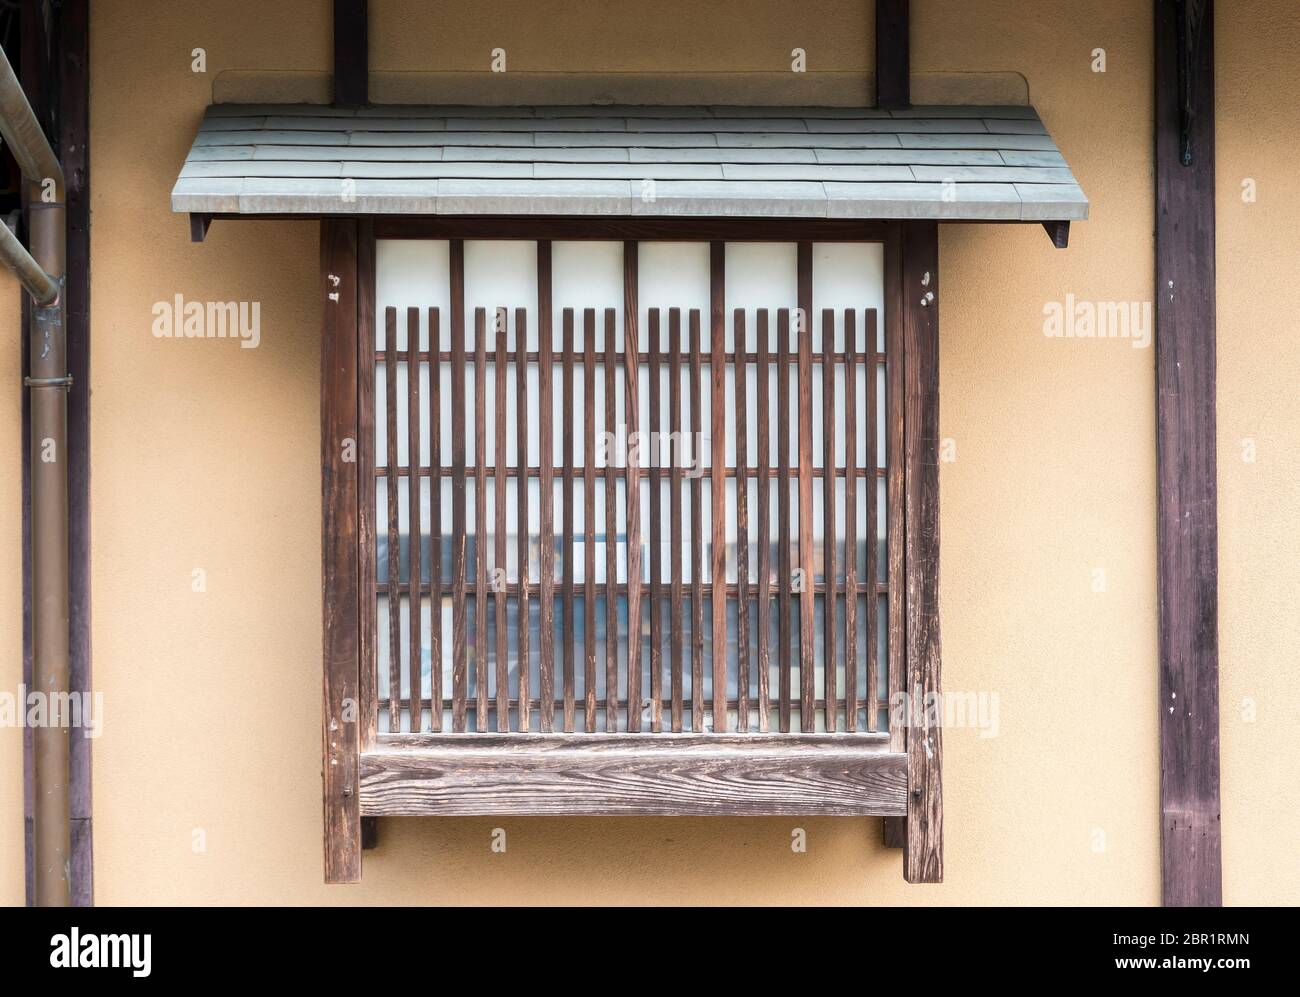 Japanese Style Old Housearchitecturelandscape Old Japanese Stock Photo  1459505411